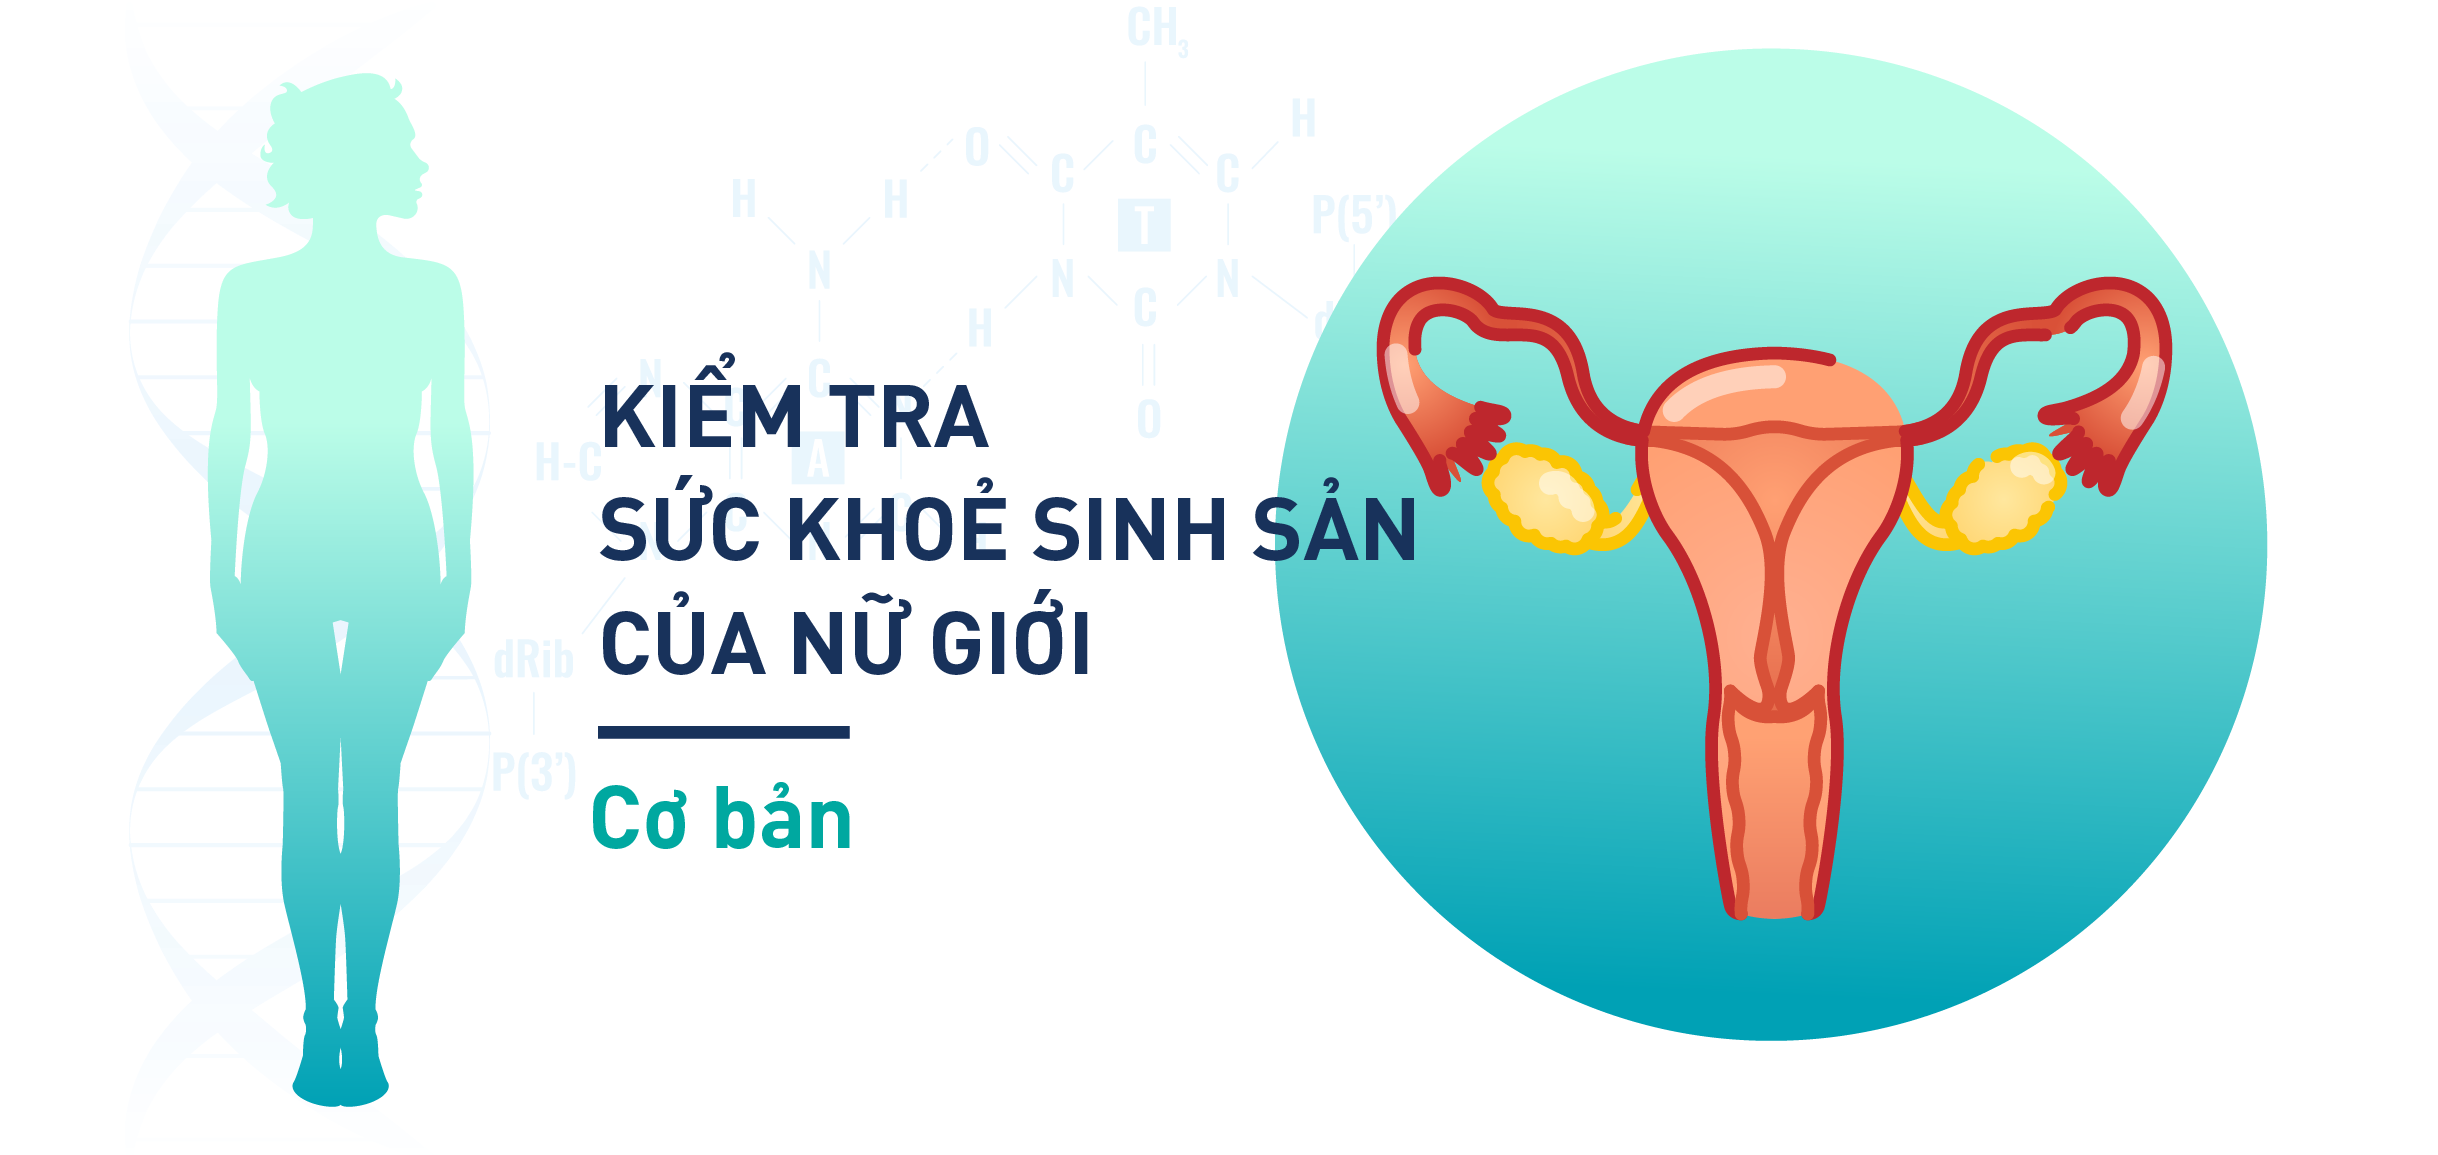 Gói Xét nghiệm kiểm tra sức khoẻ sinh sản của nữ giới cơ bản - TTXN LABHOUSE